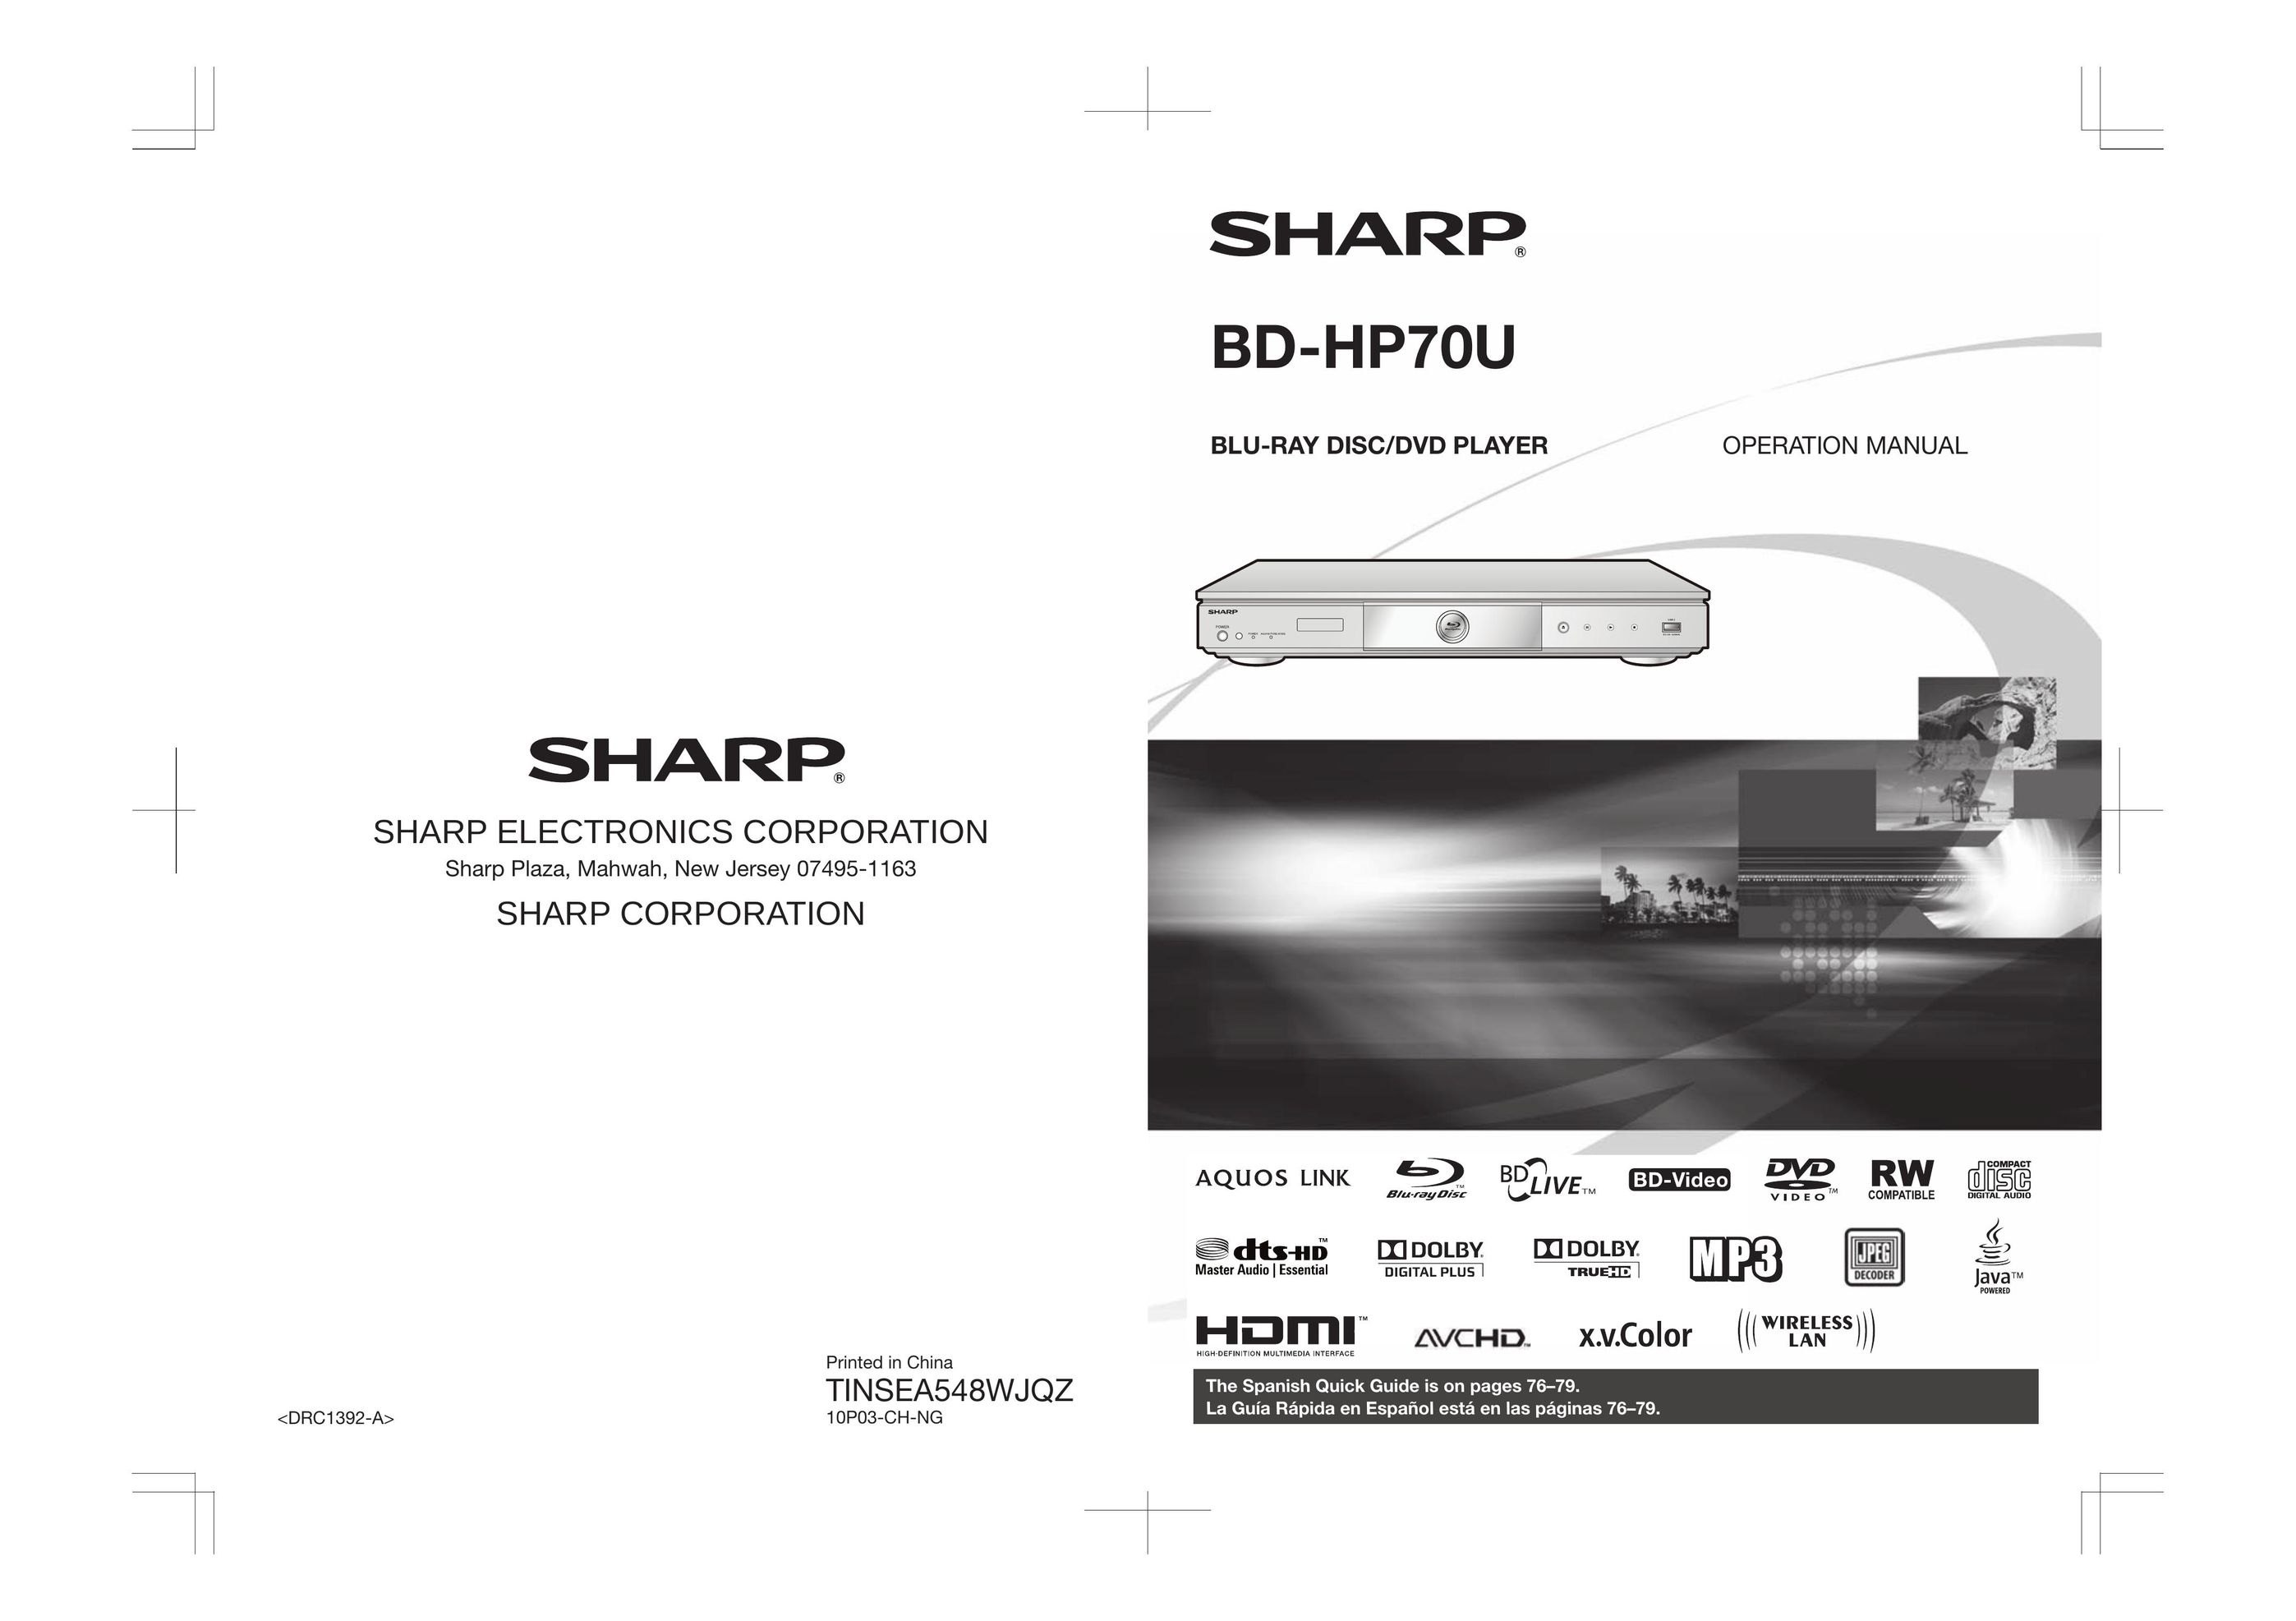 Sharp TINSEA548WJQZ Blu-ray Player User Manual